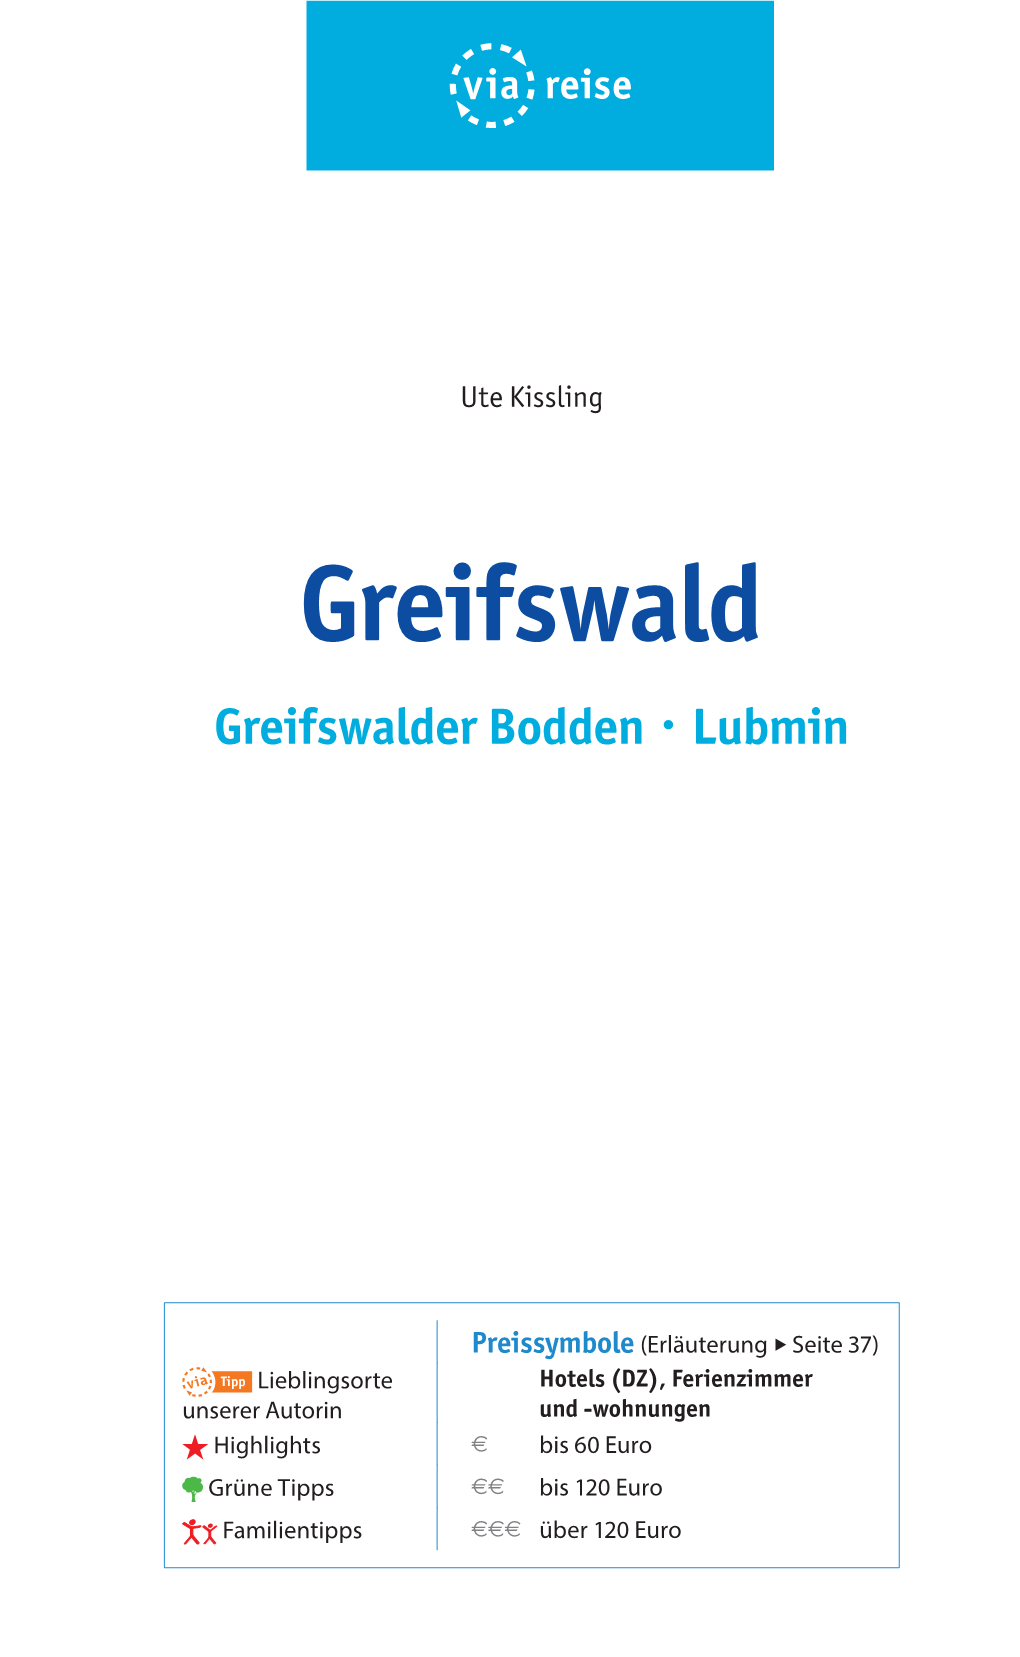 Greifswald Greifswalder Bodden · Lubmin